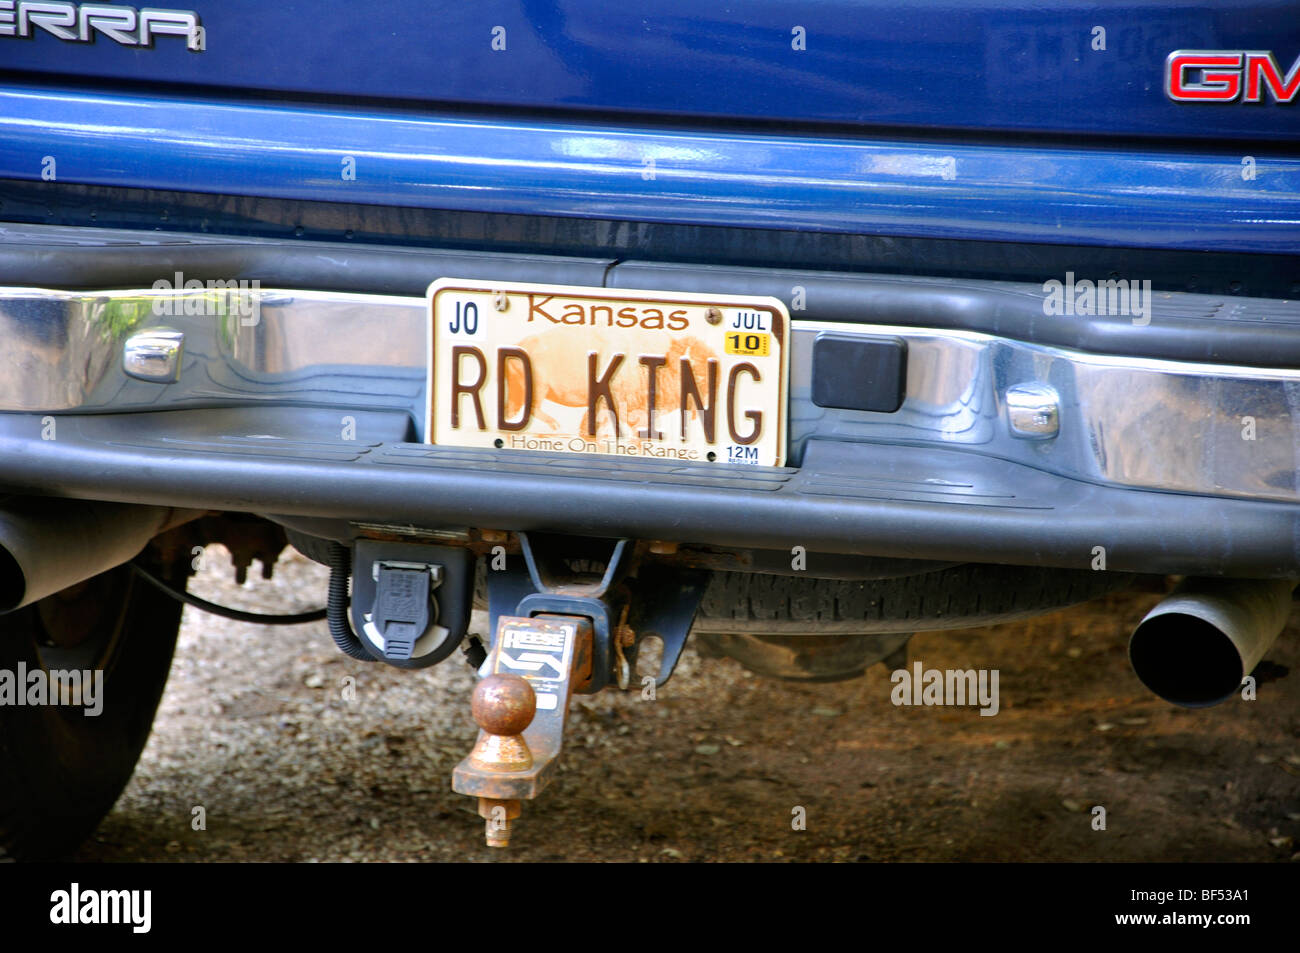 'RD RE" (Road King) la targa sul carrello di prelievo Foto Stock